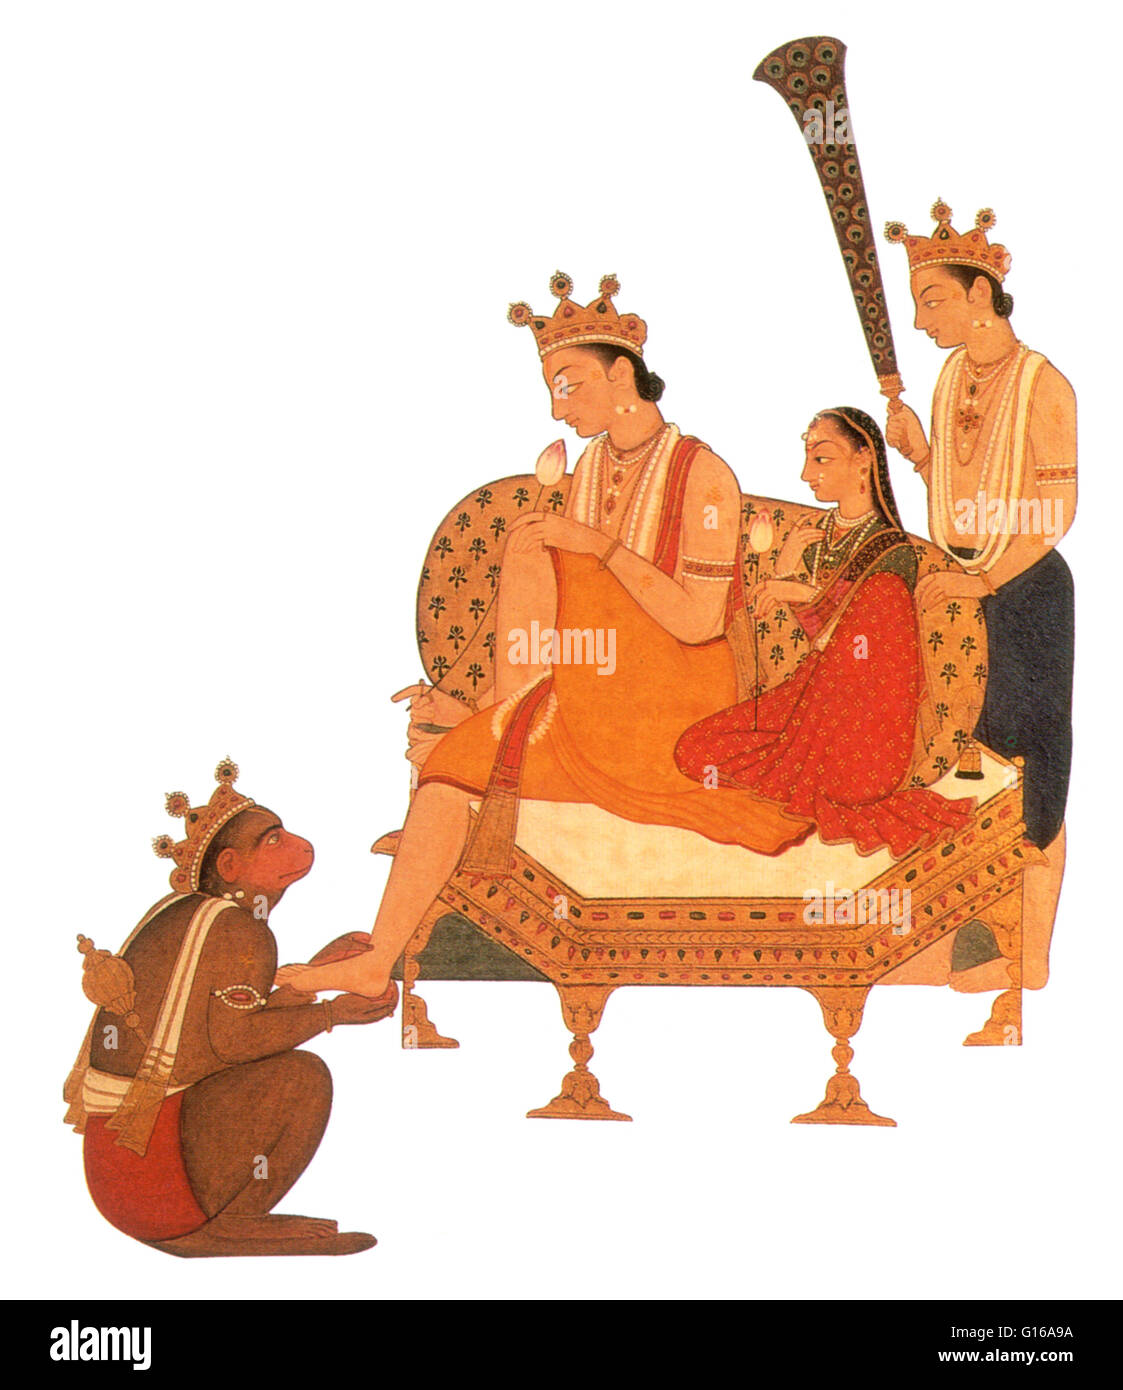 Hanuman adorare Rama che siede con sua moglie Sita e suo fratello, Lakshman. Nel mito indù, il settimo avatar di Vishnu. Rama è l'eroe epico indiano Ramayana. Nato come il principe di Ayodhya, egli affronta molte tribolazioni, chief tra cui bei Foto Stock